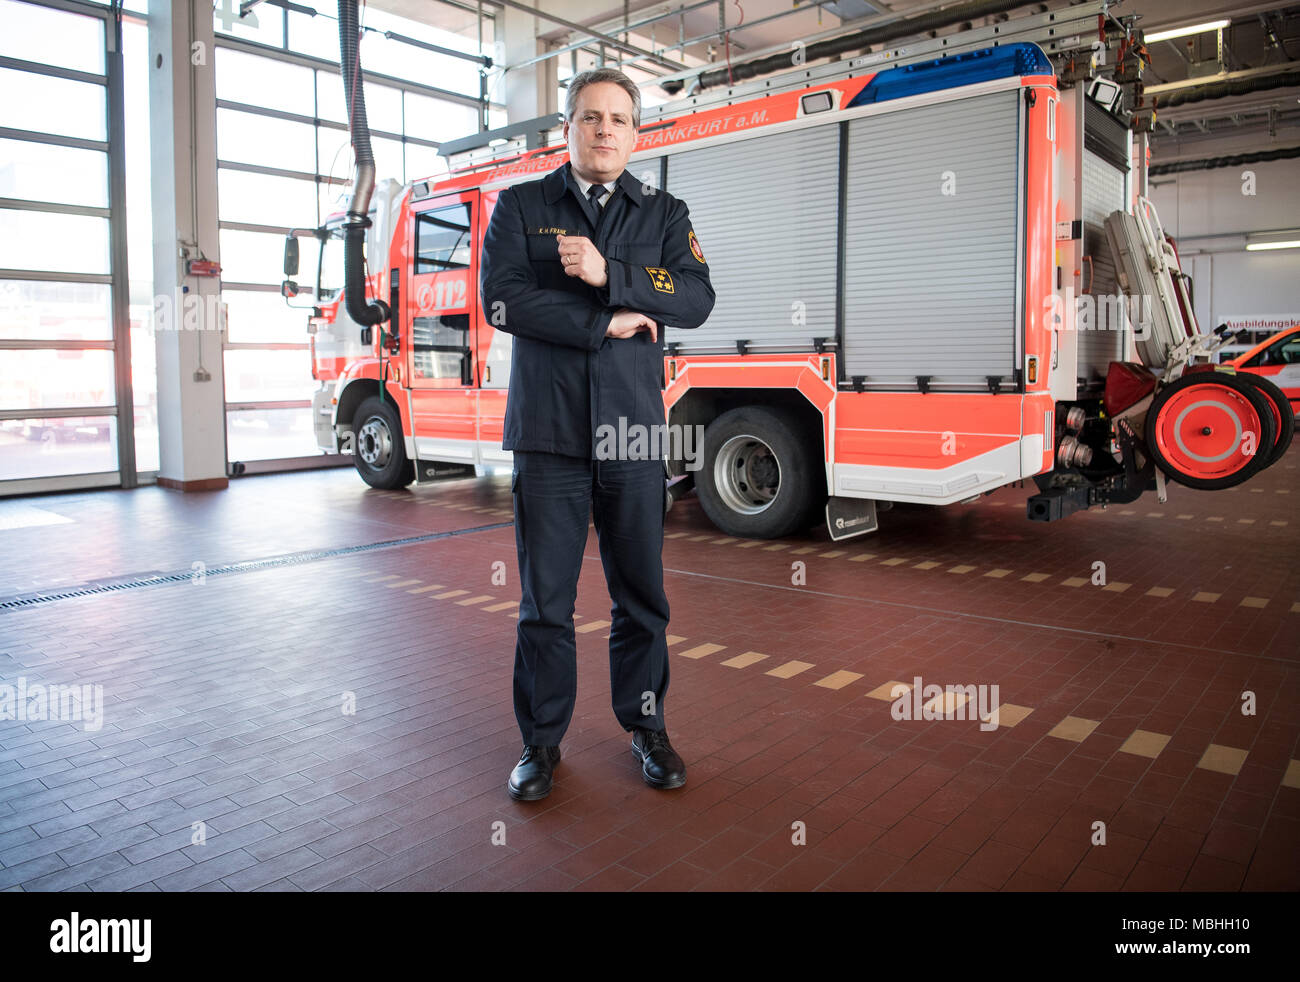 06 April 2018, Deutschland, Frankfurt am Main: Karl-Heinz Frank, neuer  Leiter der Feuerwehr in Frankfurt am Main, steht vor einem Löschfahrzeug in  der fahrzeughalle der Feuerwehr und Rettung der Station 1. Frank